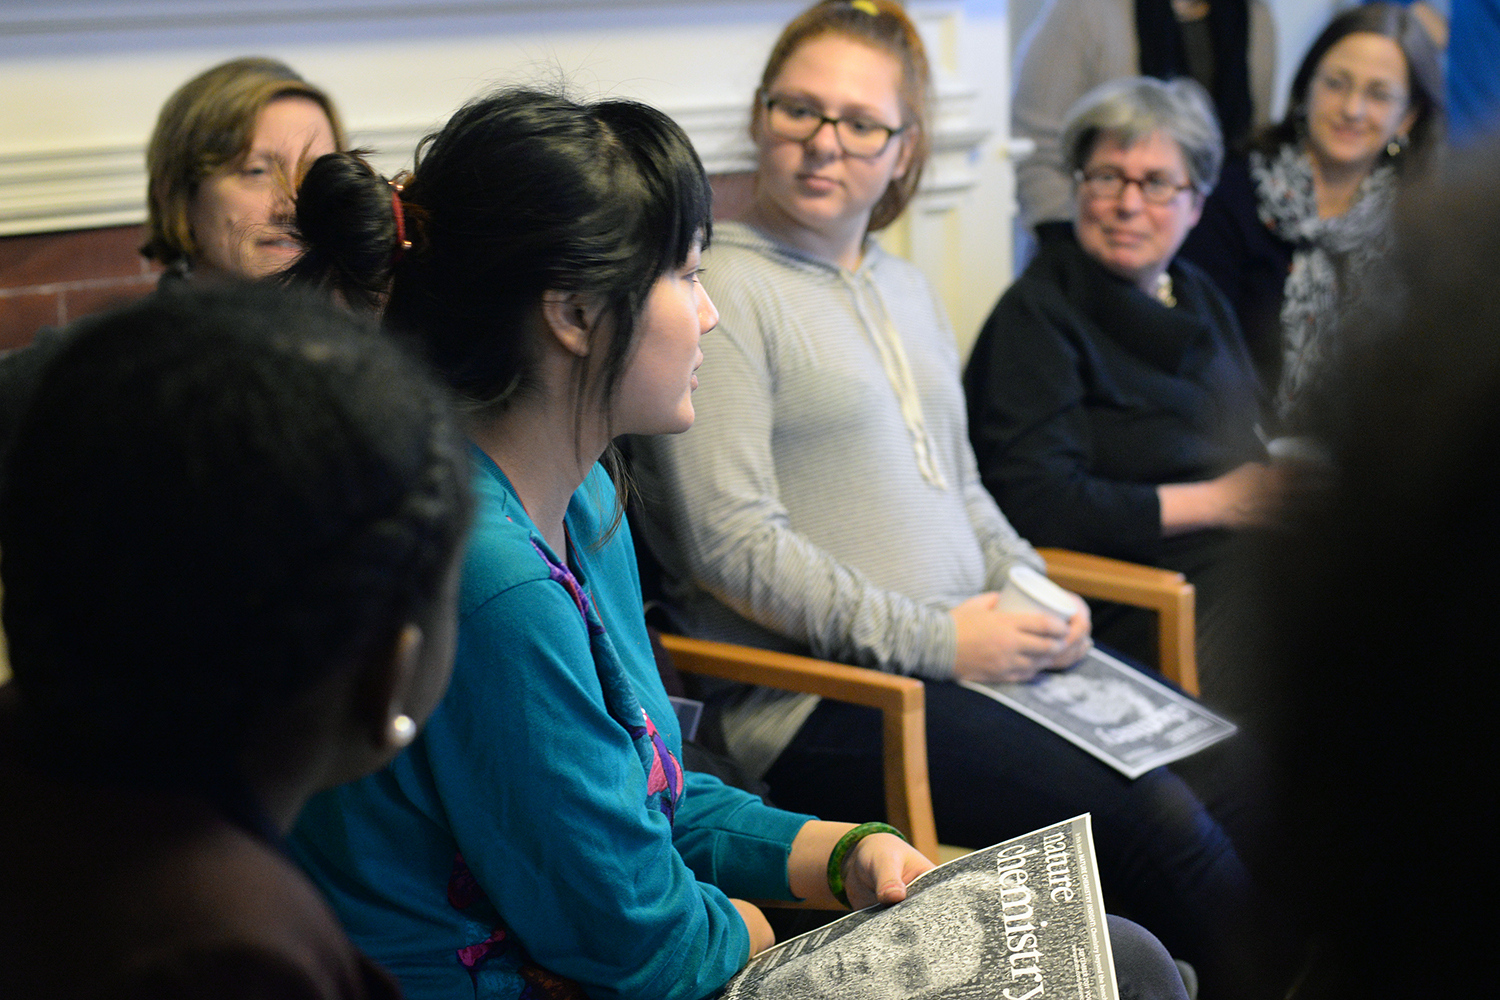 Wesleyan Women in Science Tea Reception, Feb. 19, 2015.